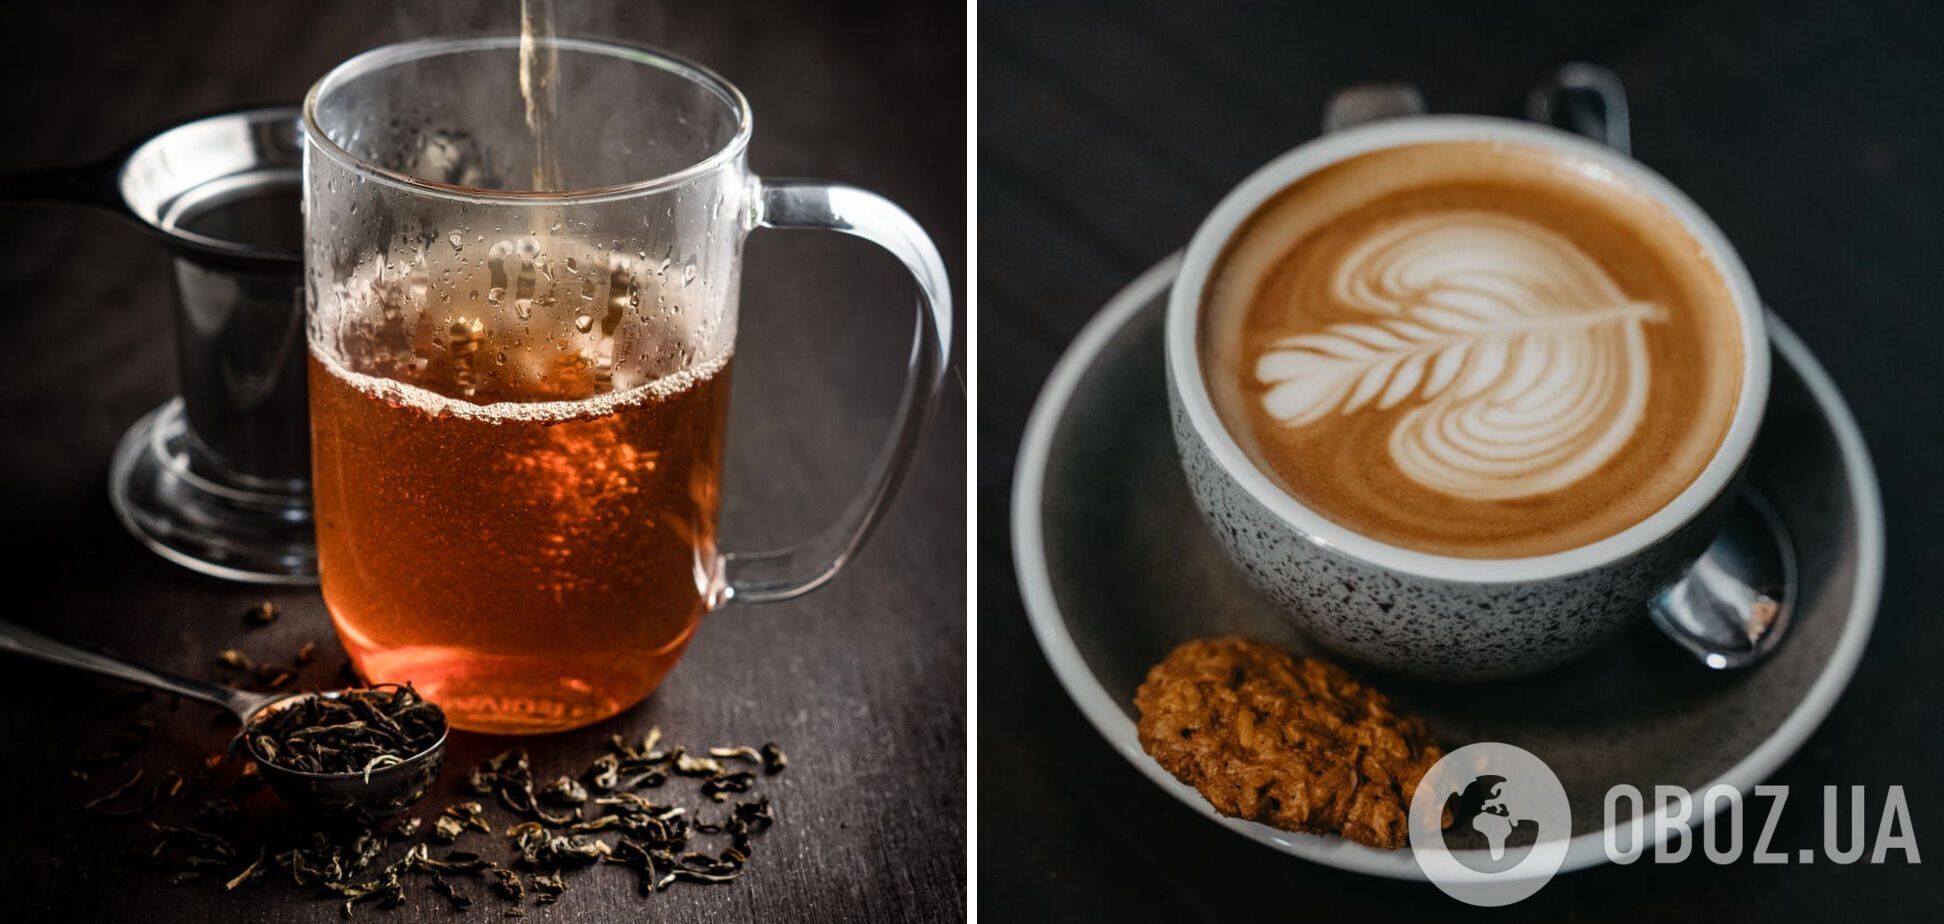 Гарячі напої, які не варто поєднувати з їжею – чай та кава